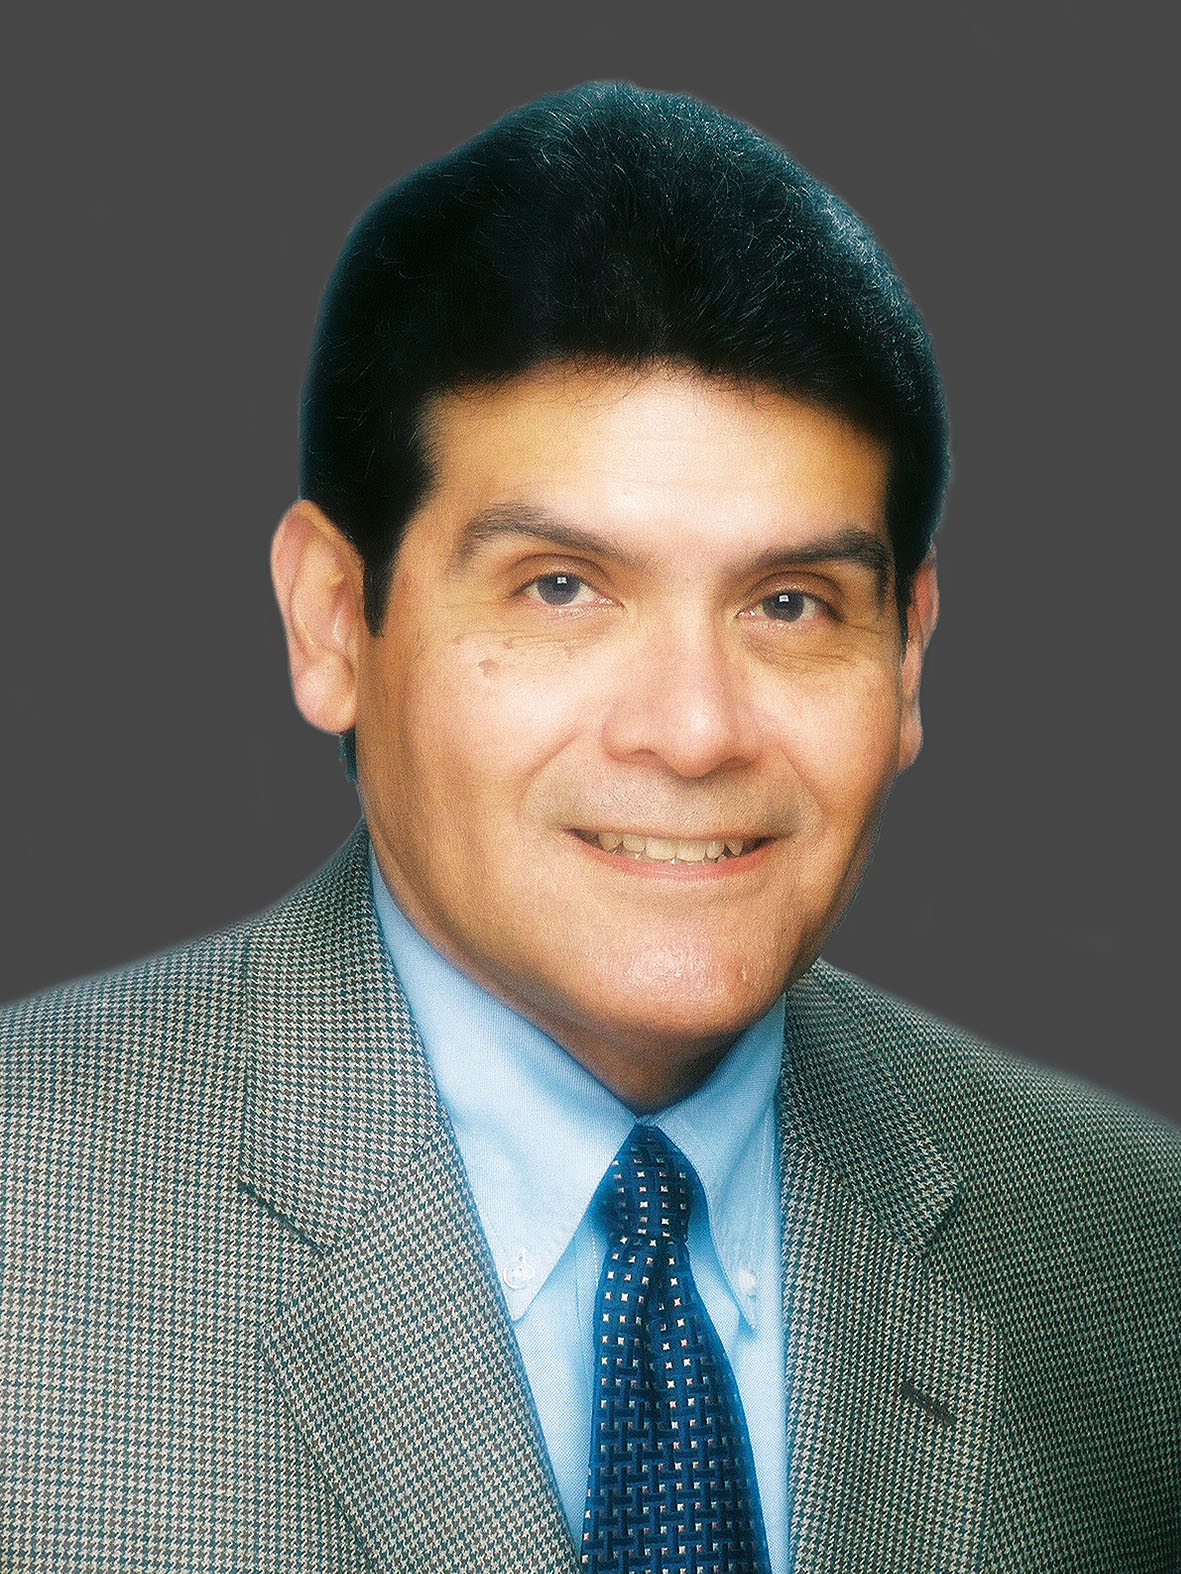 Leonard Guerrero